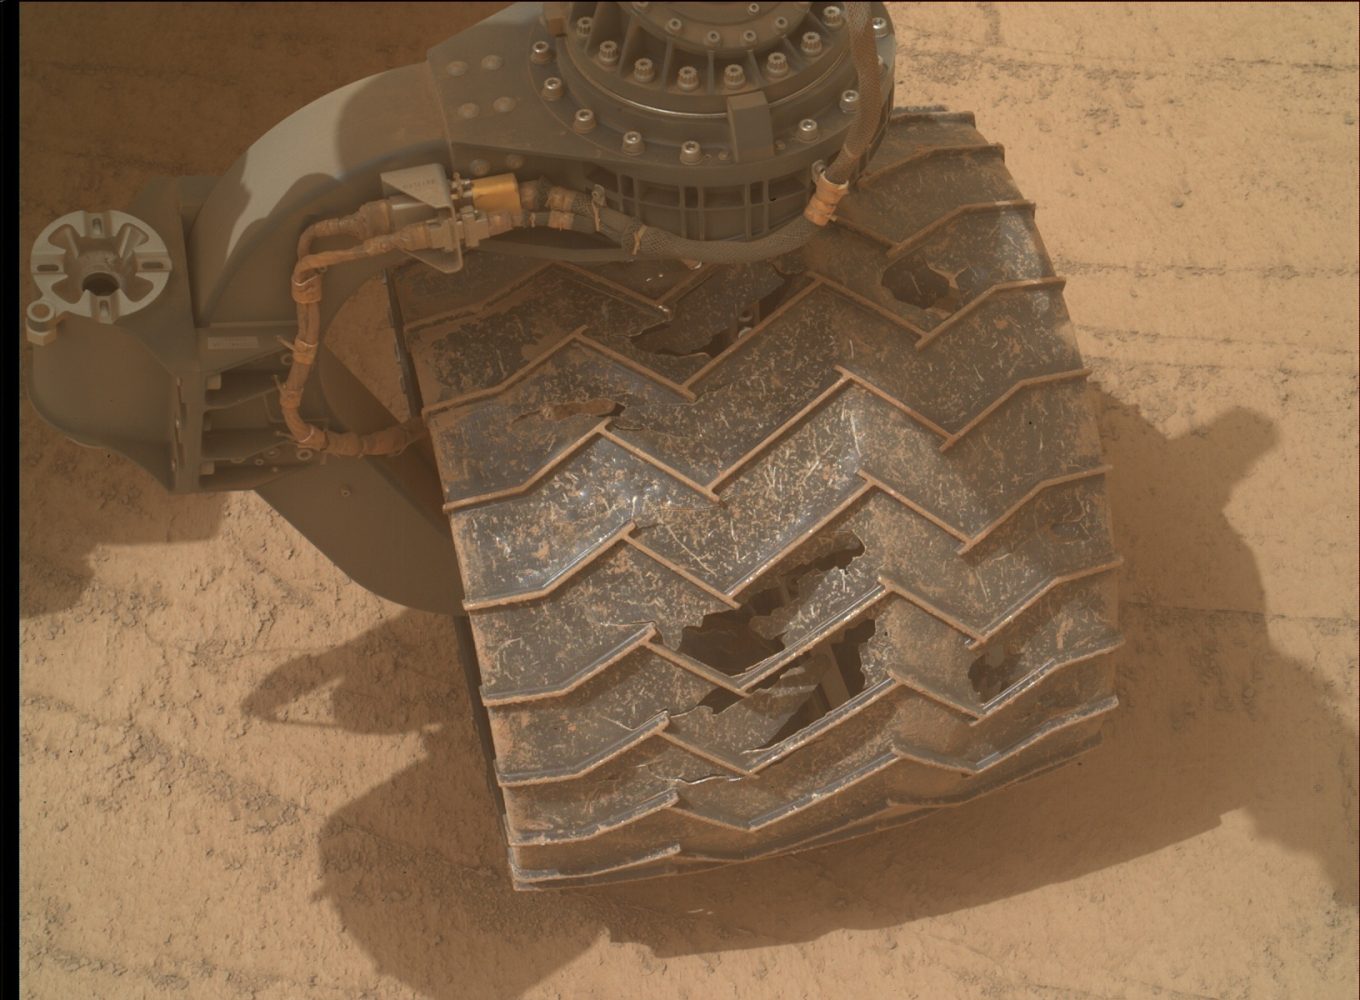 curiosity rover wheel holes